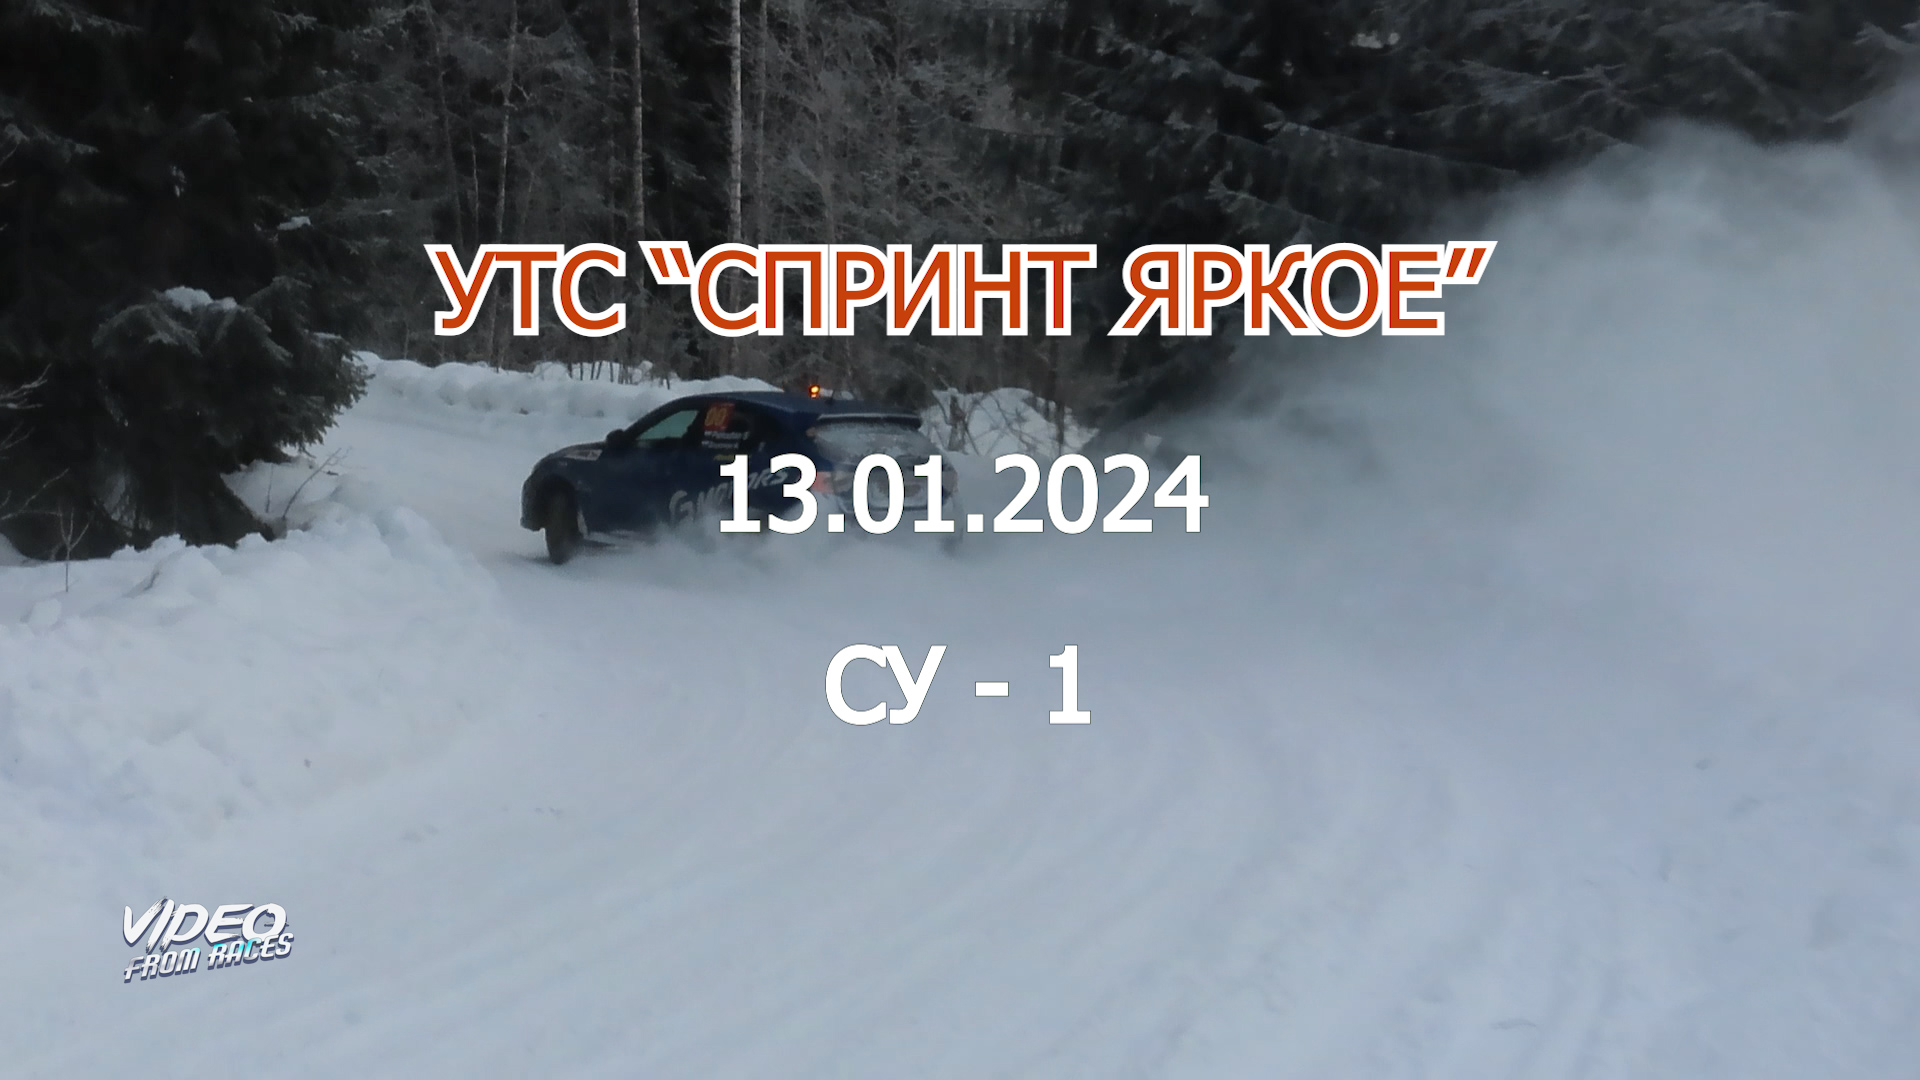 СУ-1. УТС "Спринт Яркое" 13.01.2024